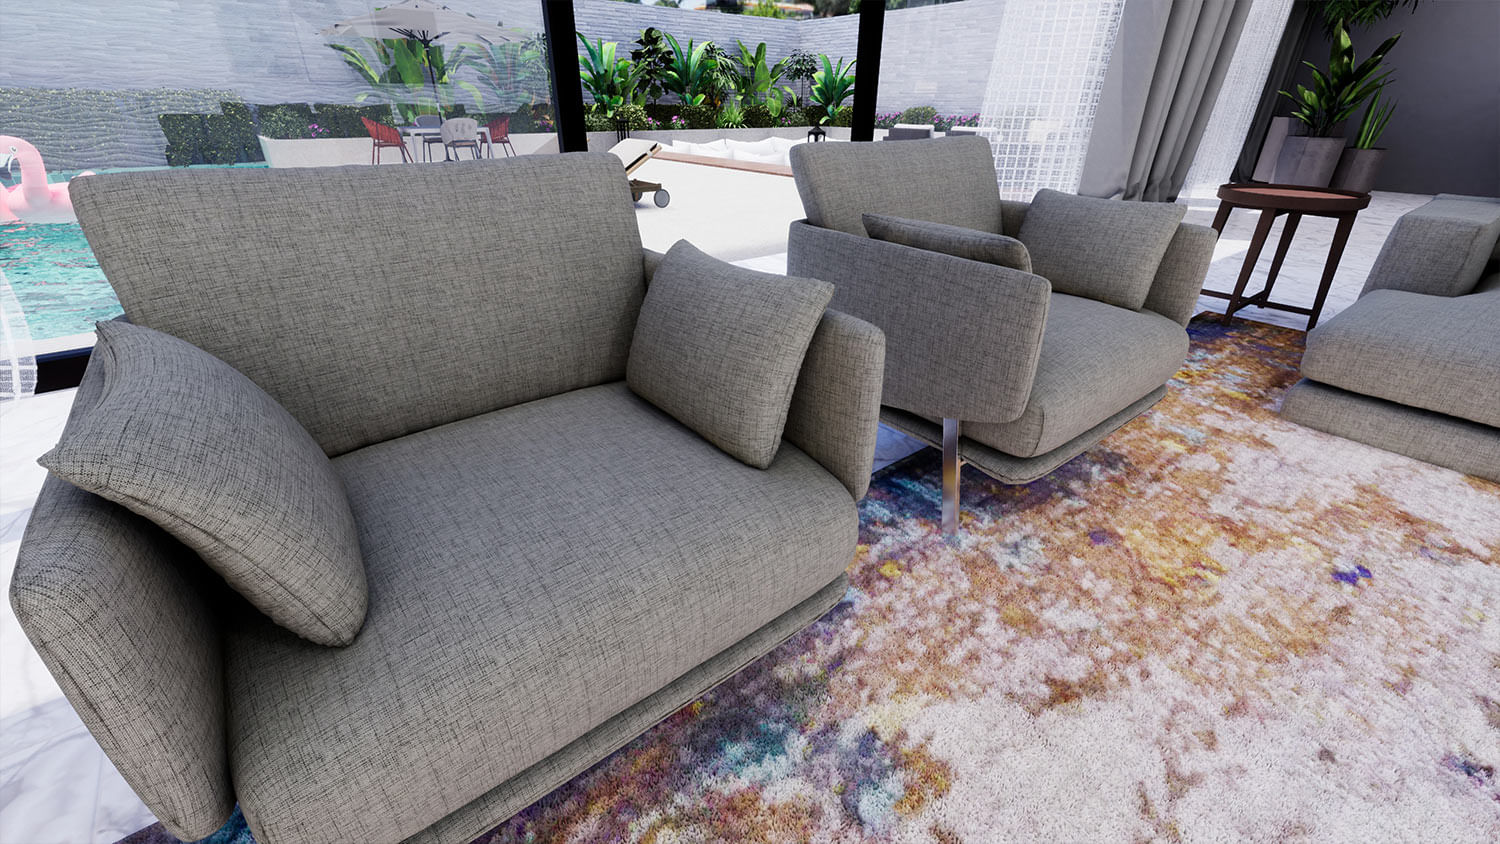 área externa com poltronas e sofás com estofados de tecido impermeável na cor branca e almofadas em tons neutros